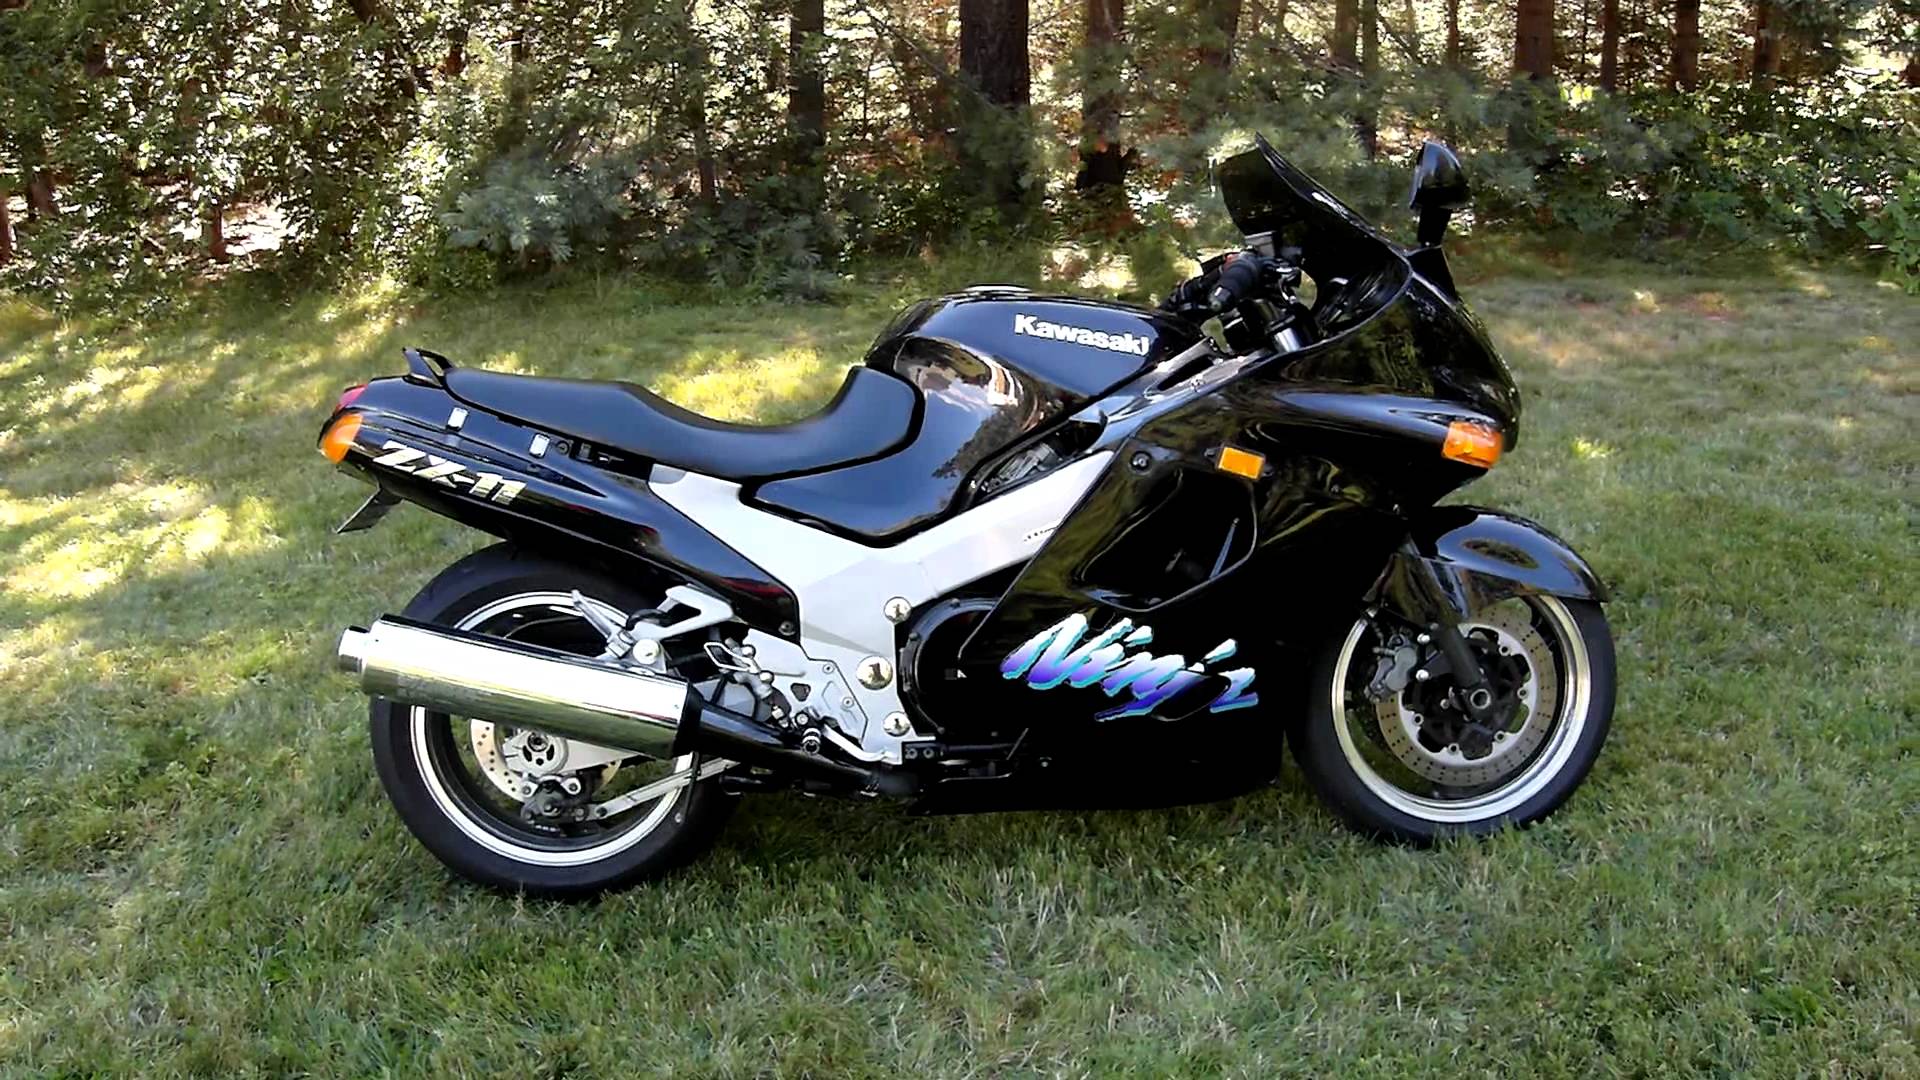 Kawasaki zzr1100